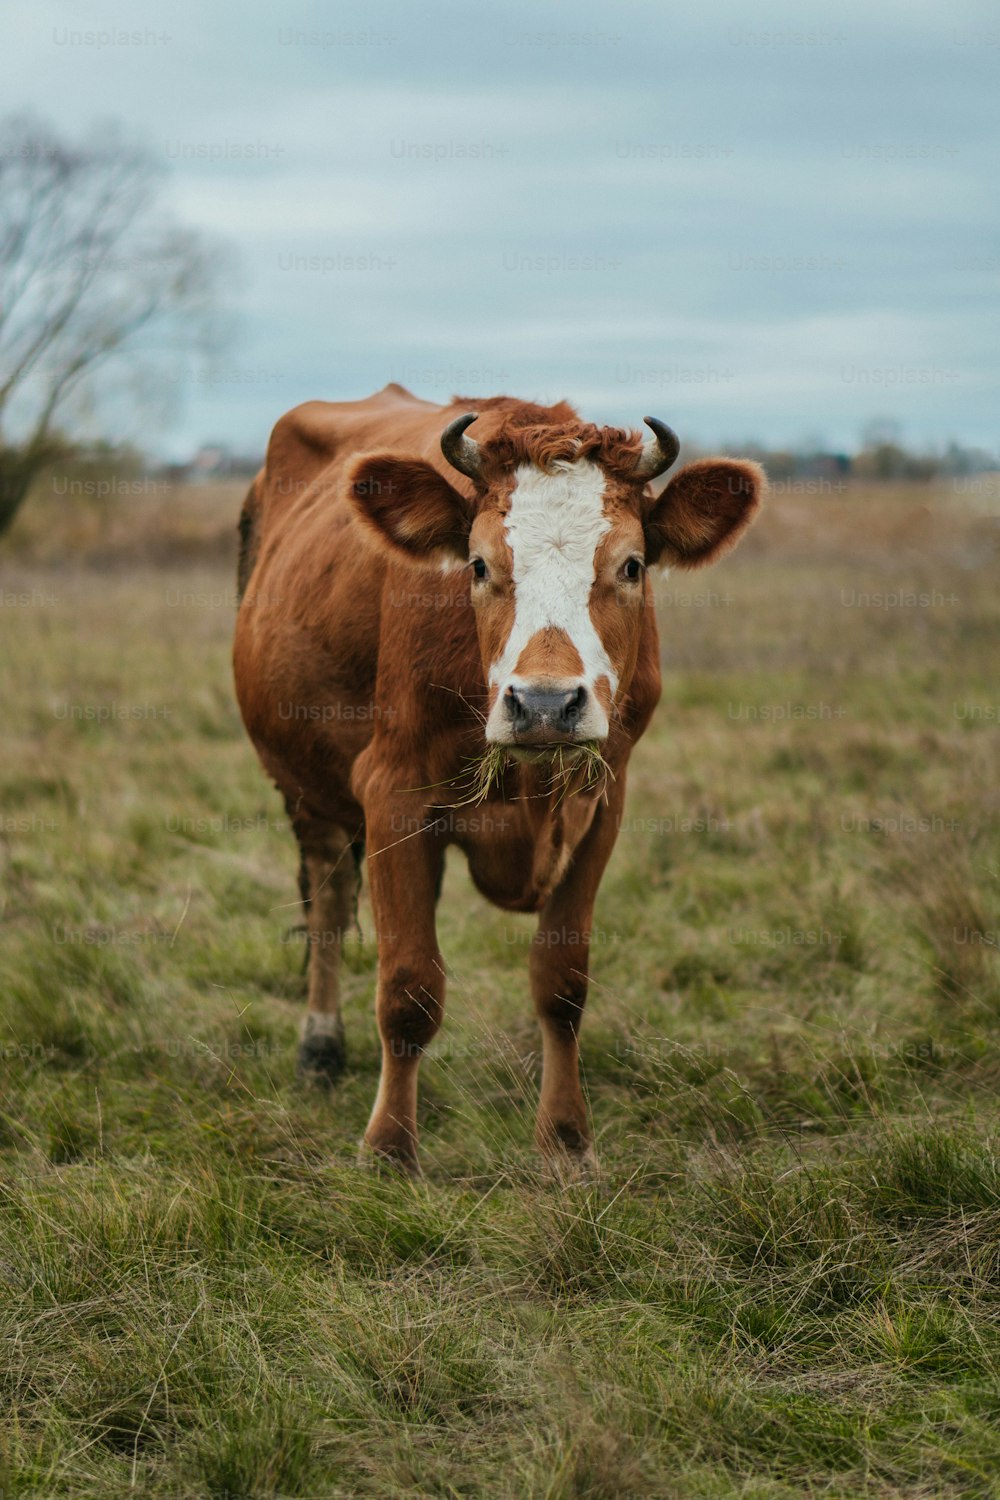 Una vaca marrón y blanca de pie sobre un campo cubierto de hierba